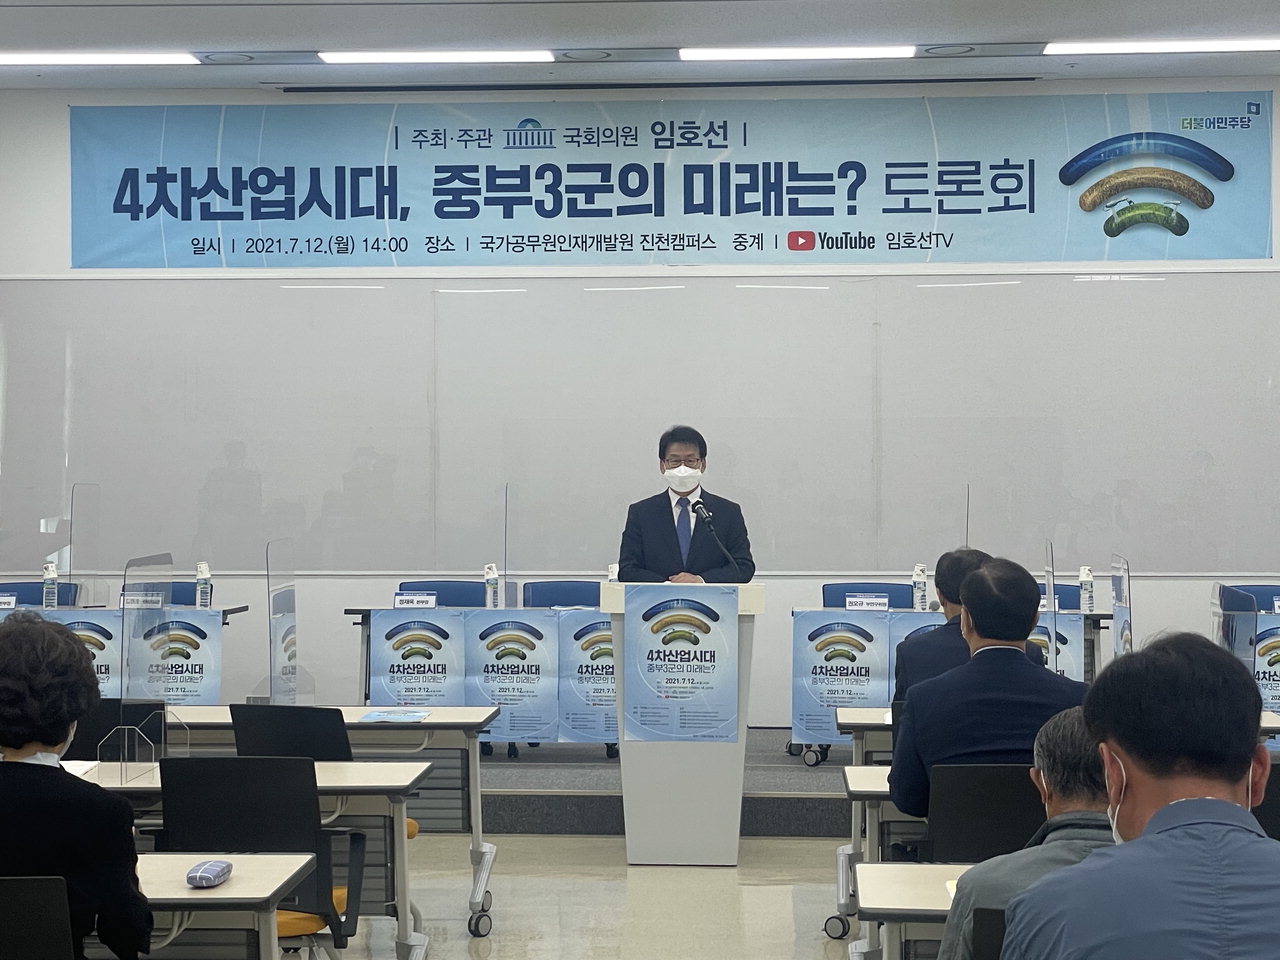 임호선 국회의원이 12일 충북혁신도시 국가공무원인재개발원에서 '4차 산업시대 중부3군의 미래는'을 주제로 토론회를 열었다.